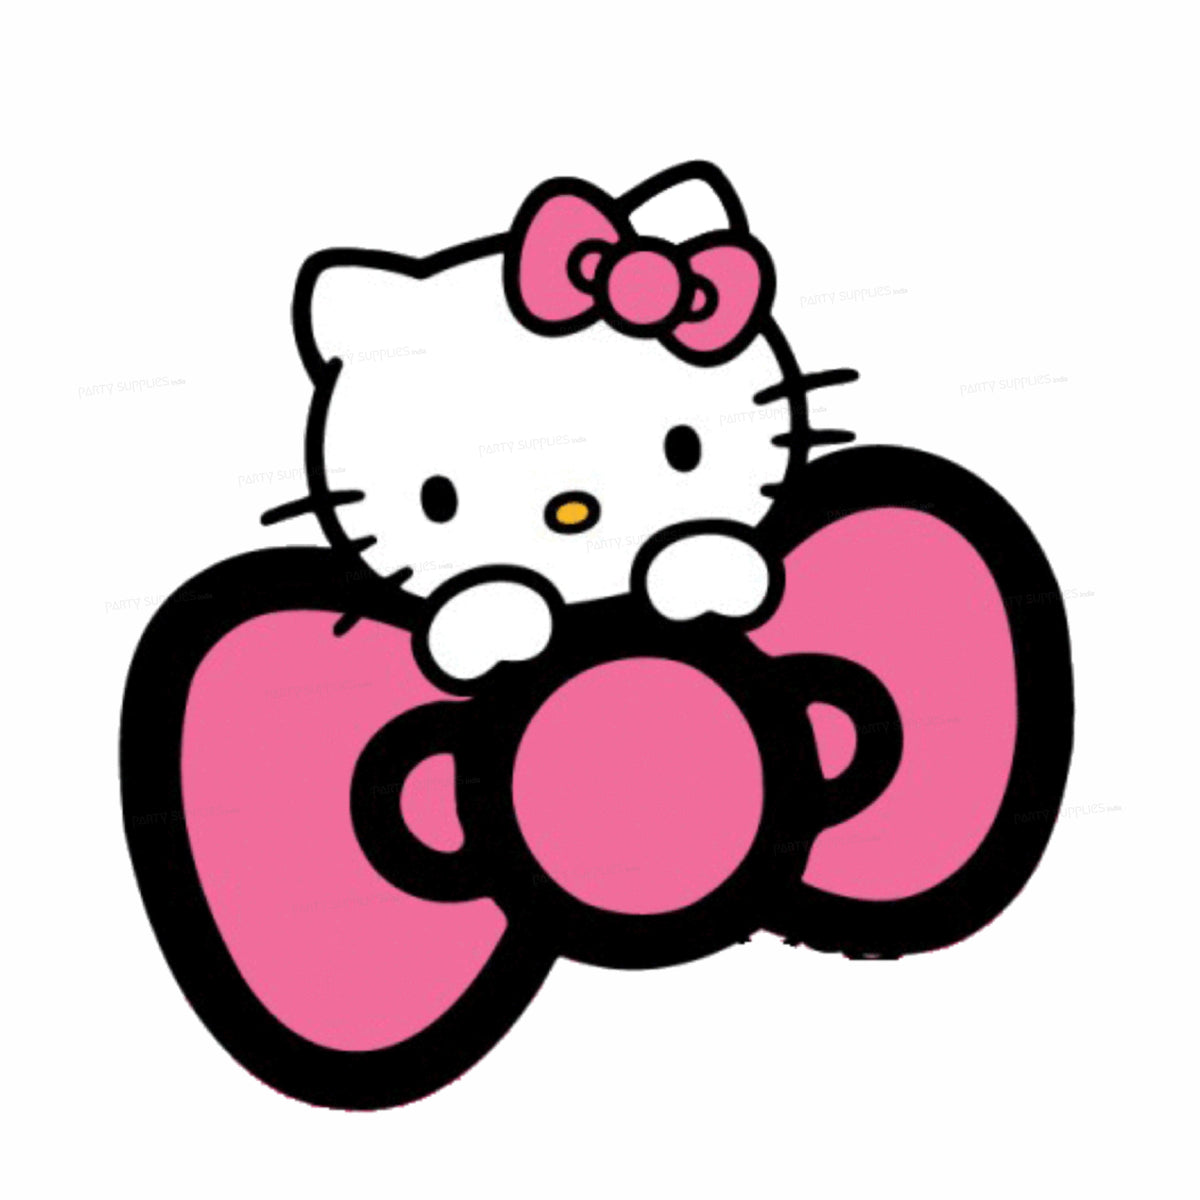 PSI Hello Kitty Theme Cutout - 03